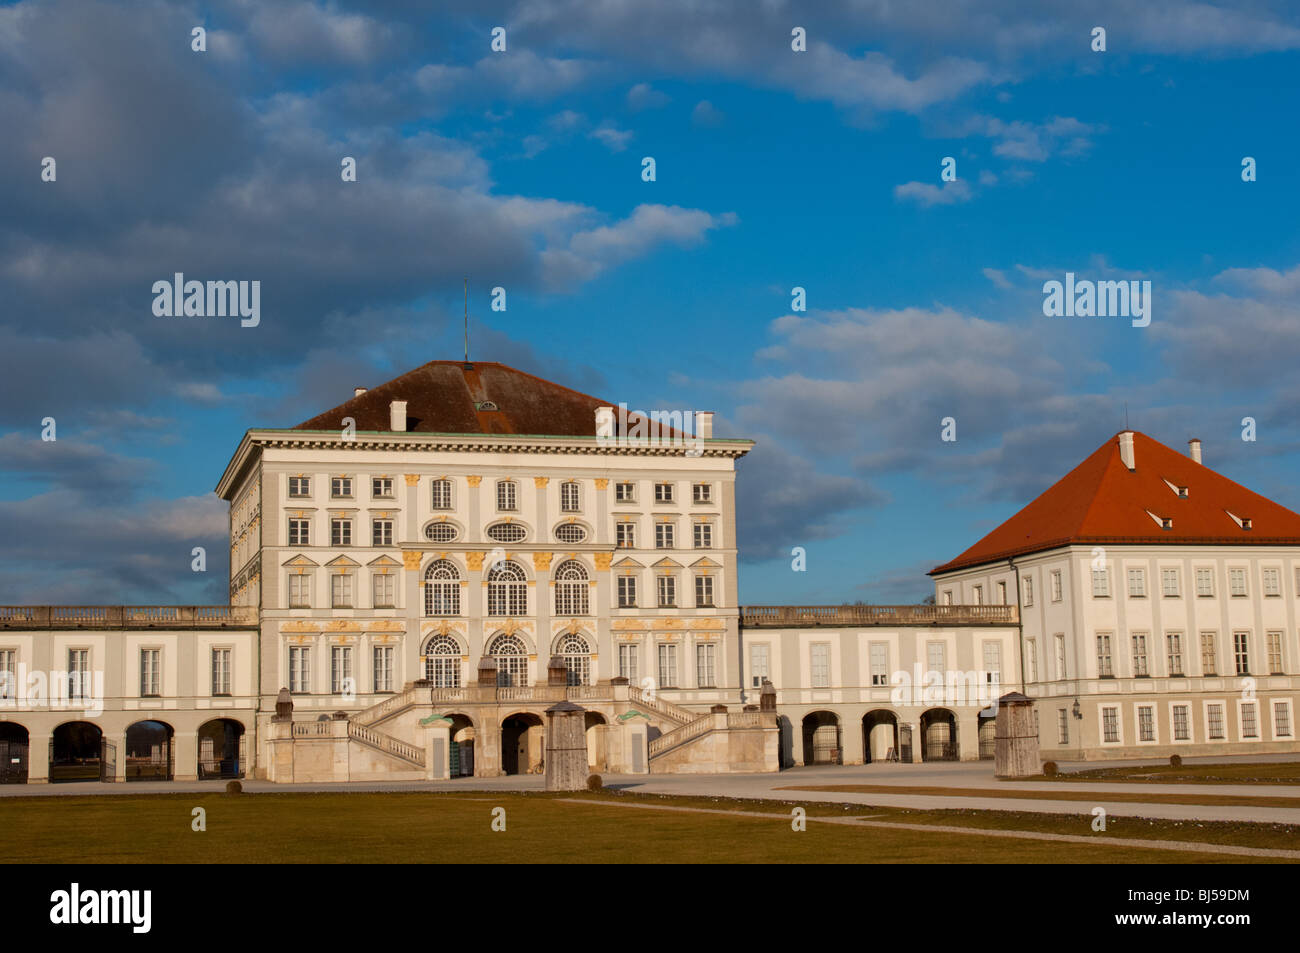 Nymphenburg palace, Munich, Germany. Stock Photo